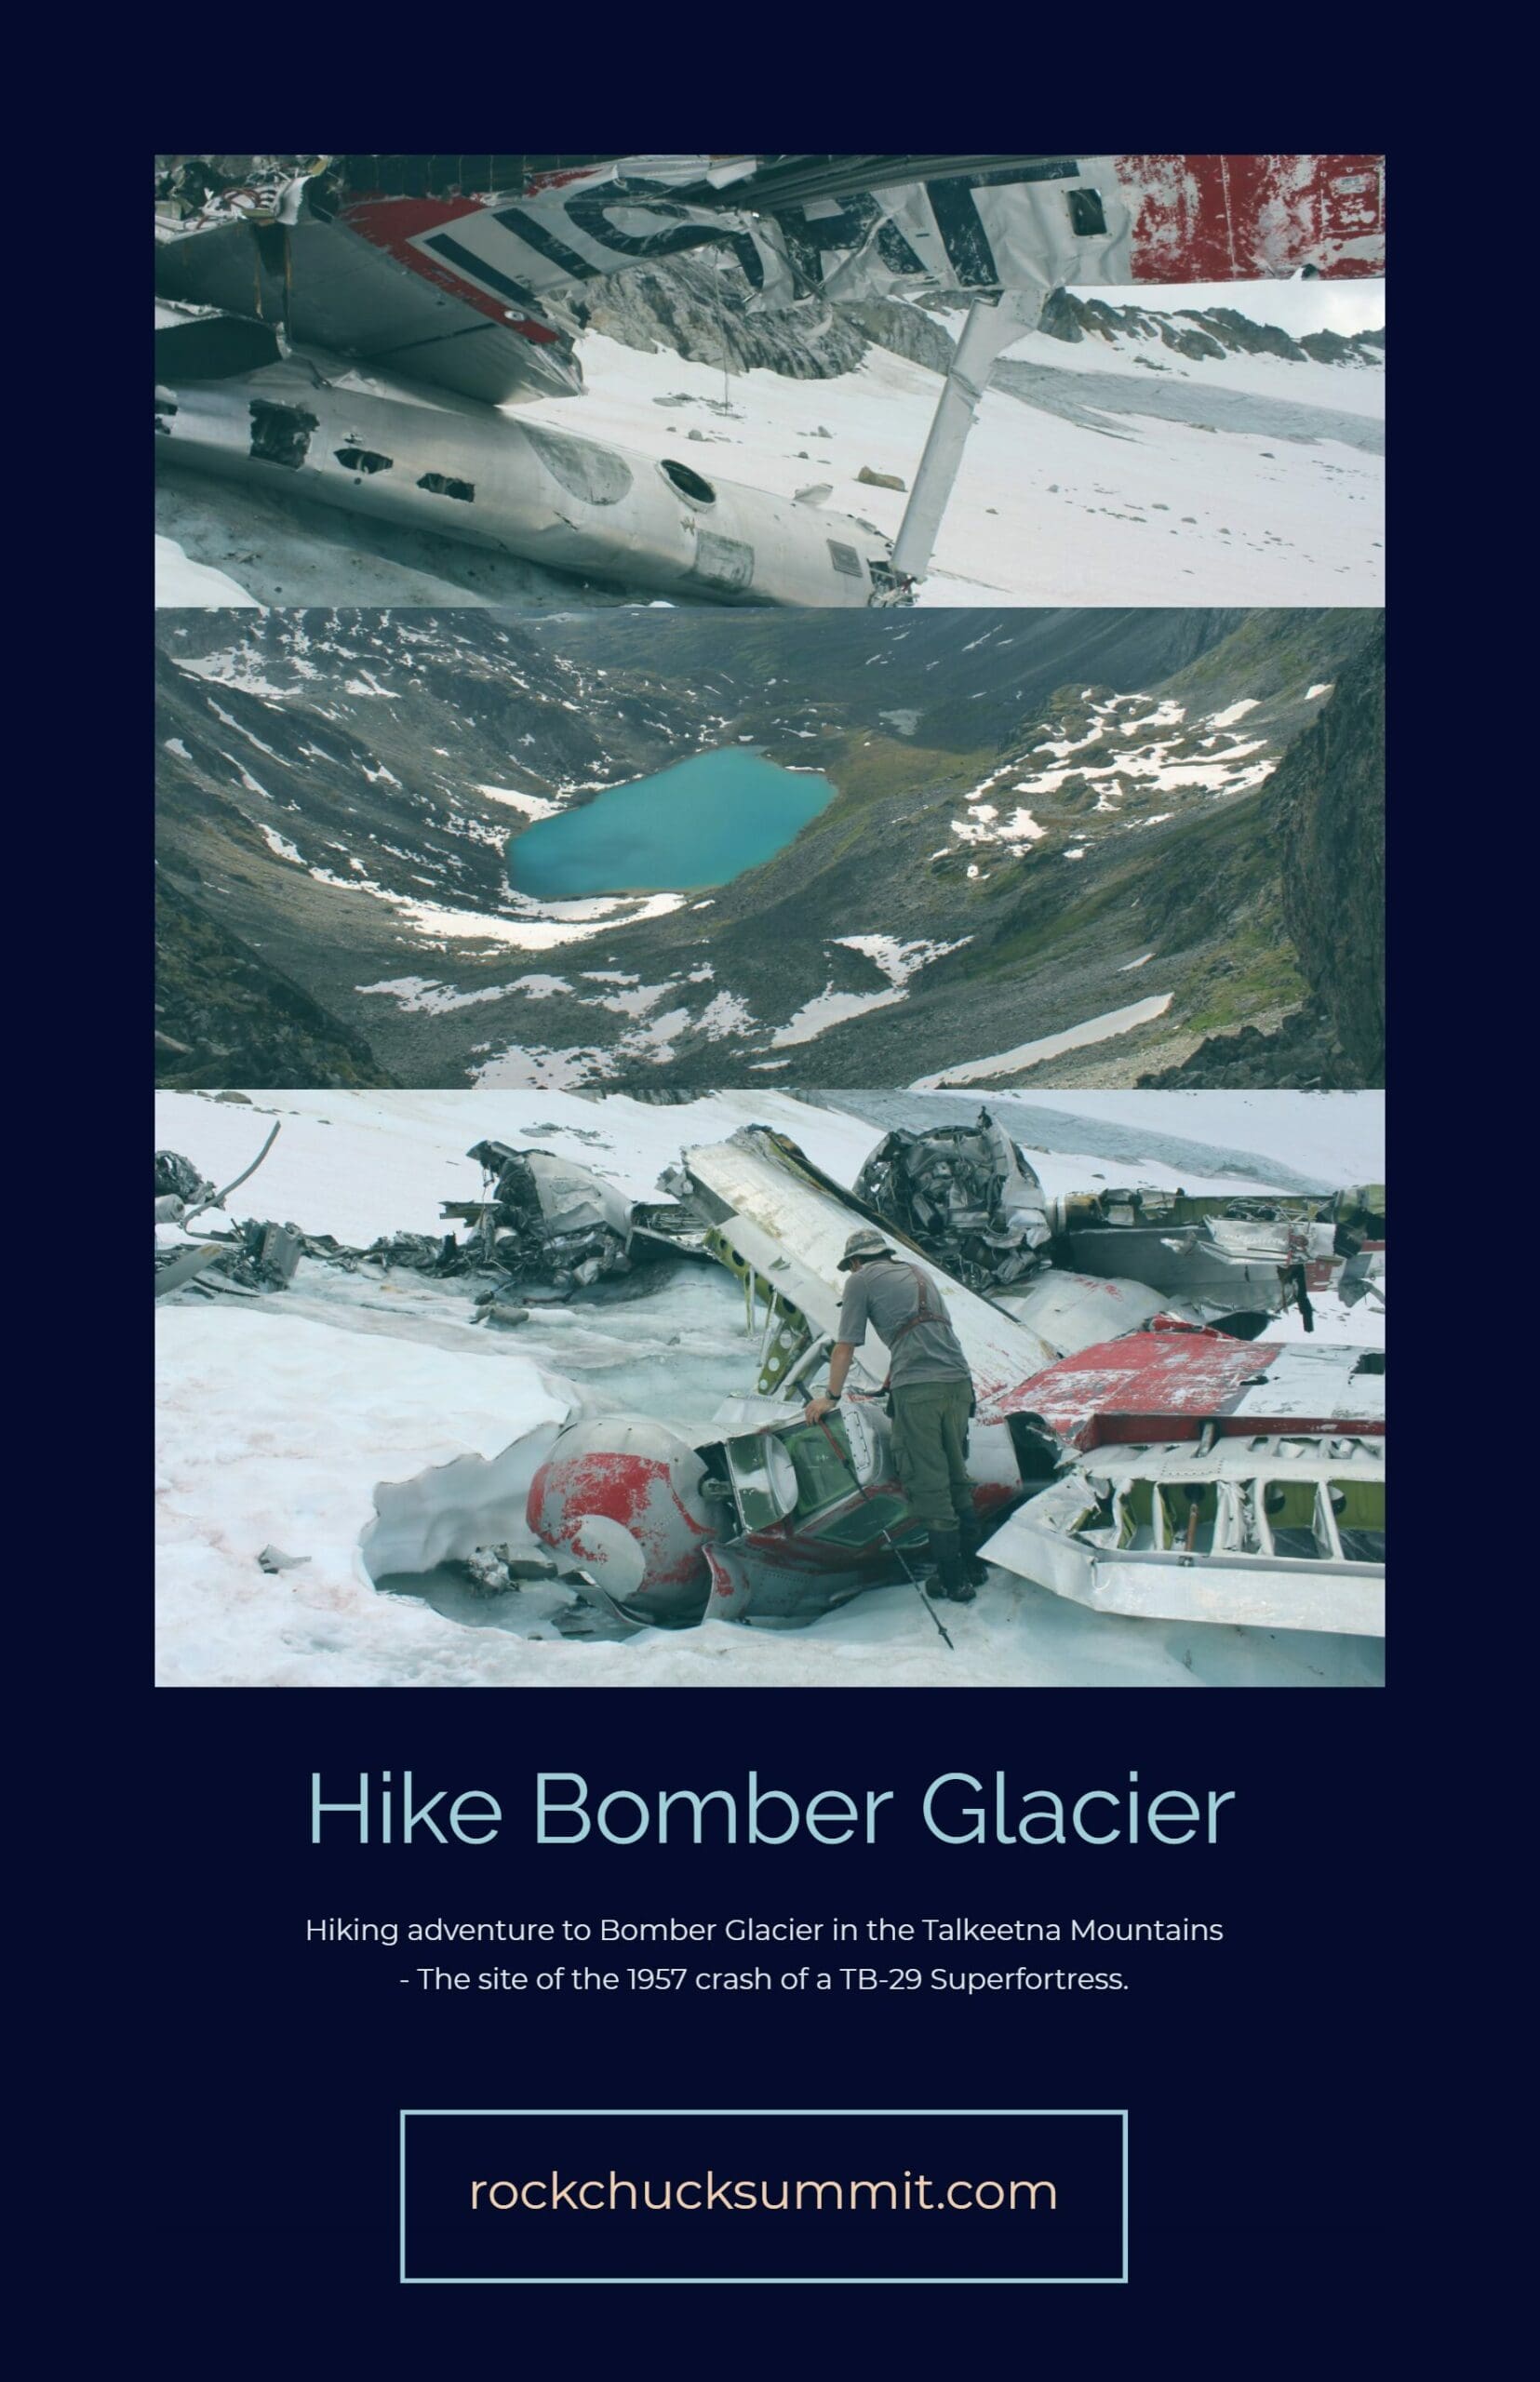 Bombardier Glacier Alaska